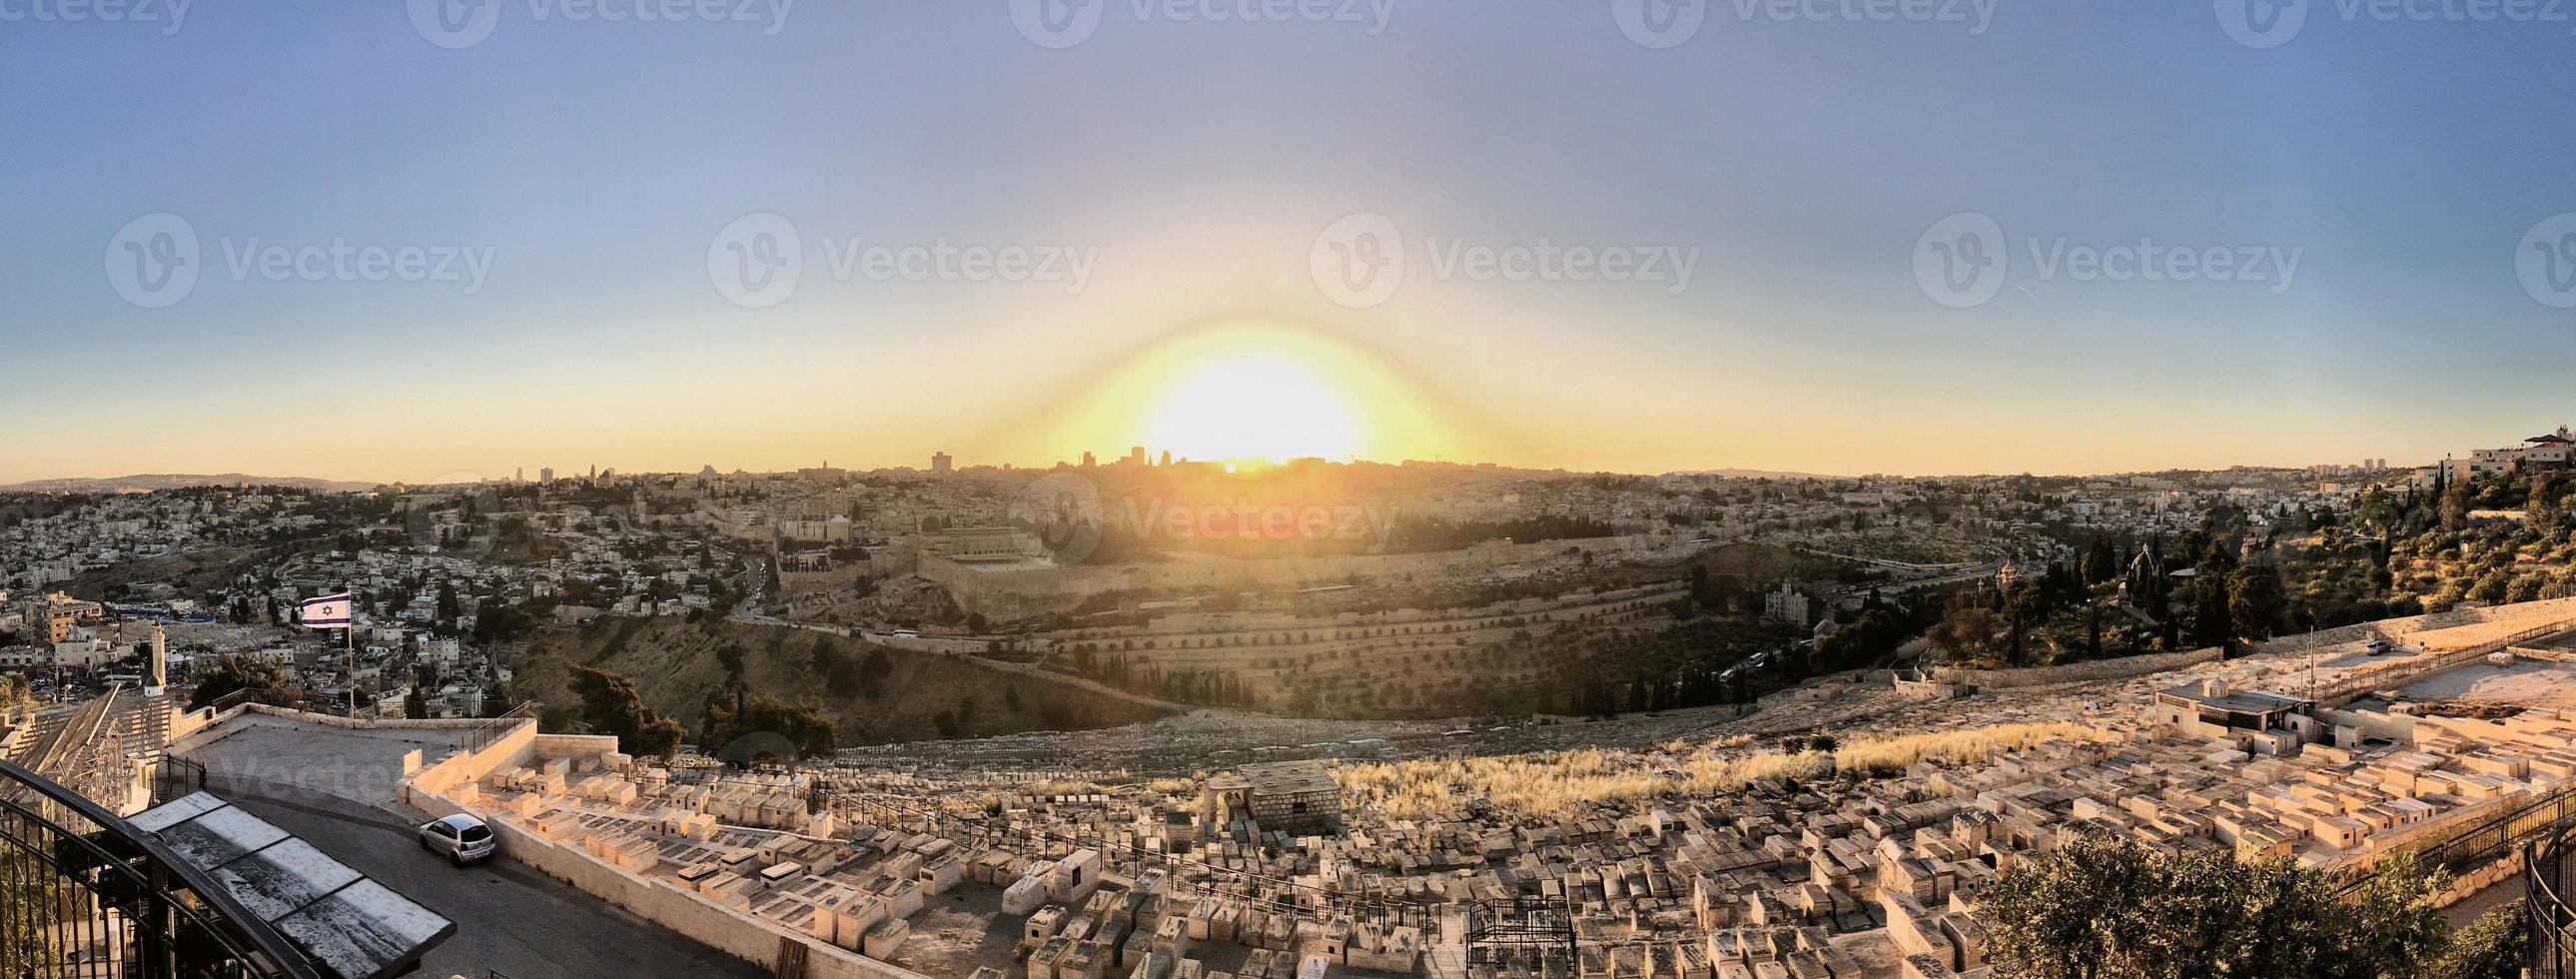 una puesta de sol sobre jerusalén desde el monte de los olivos foto